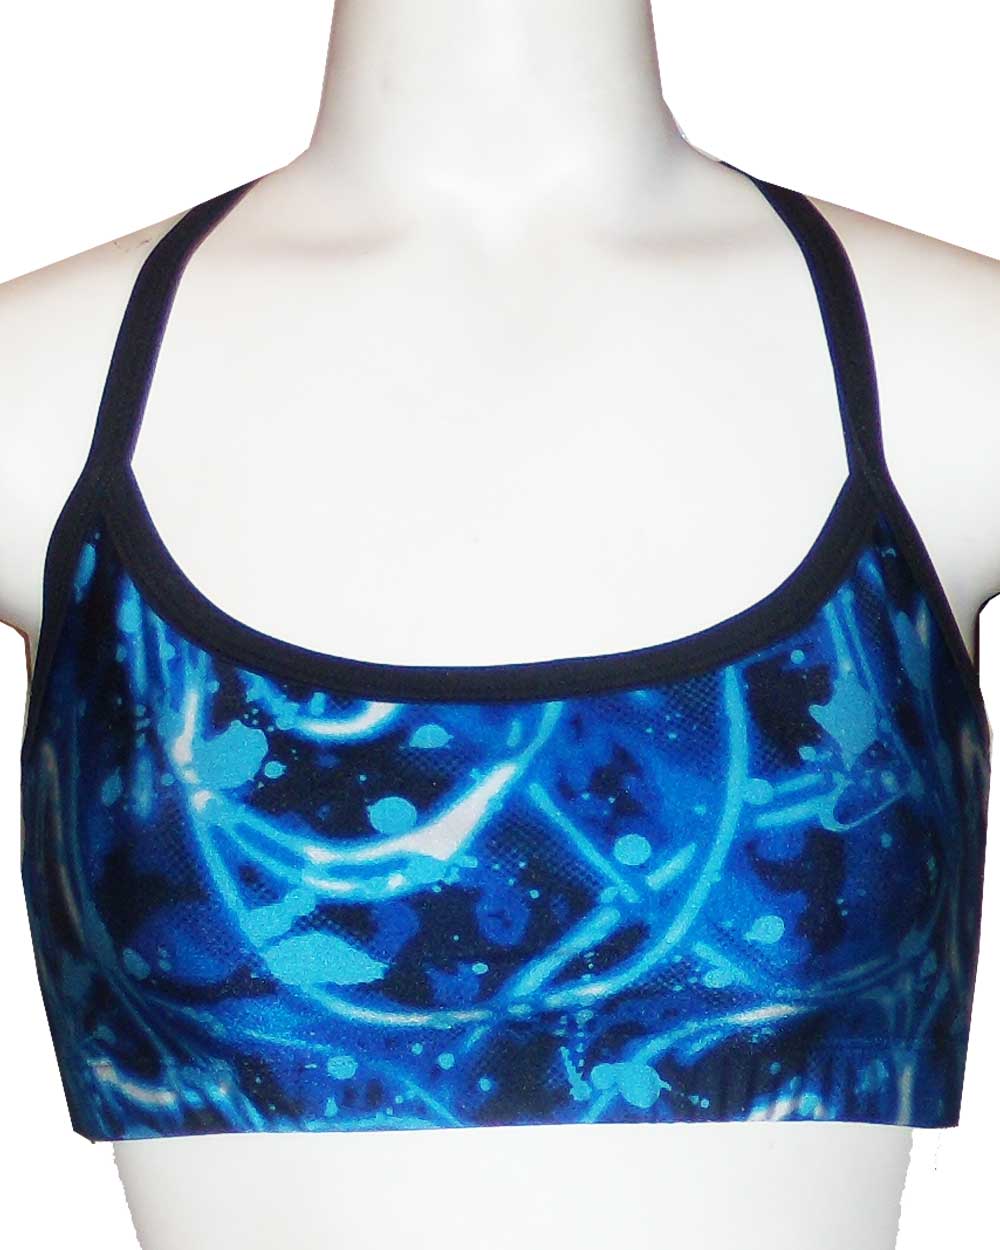 Galaxy blue sports bra | hot yoga top | by Sweat-n-Stretch